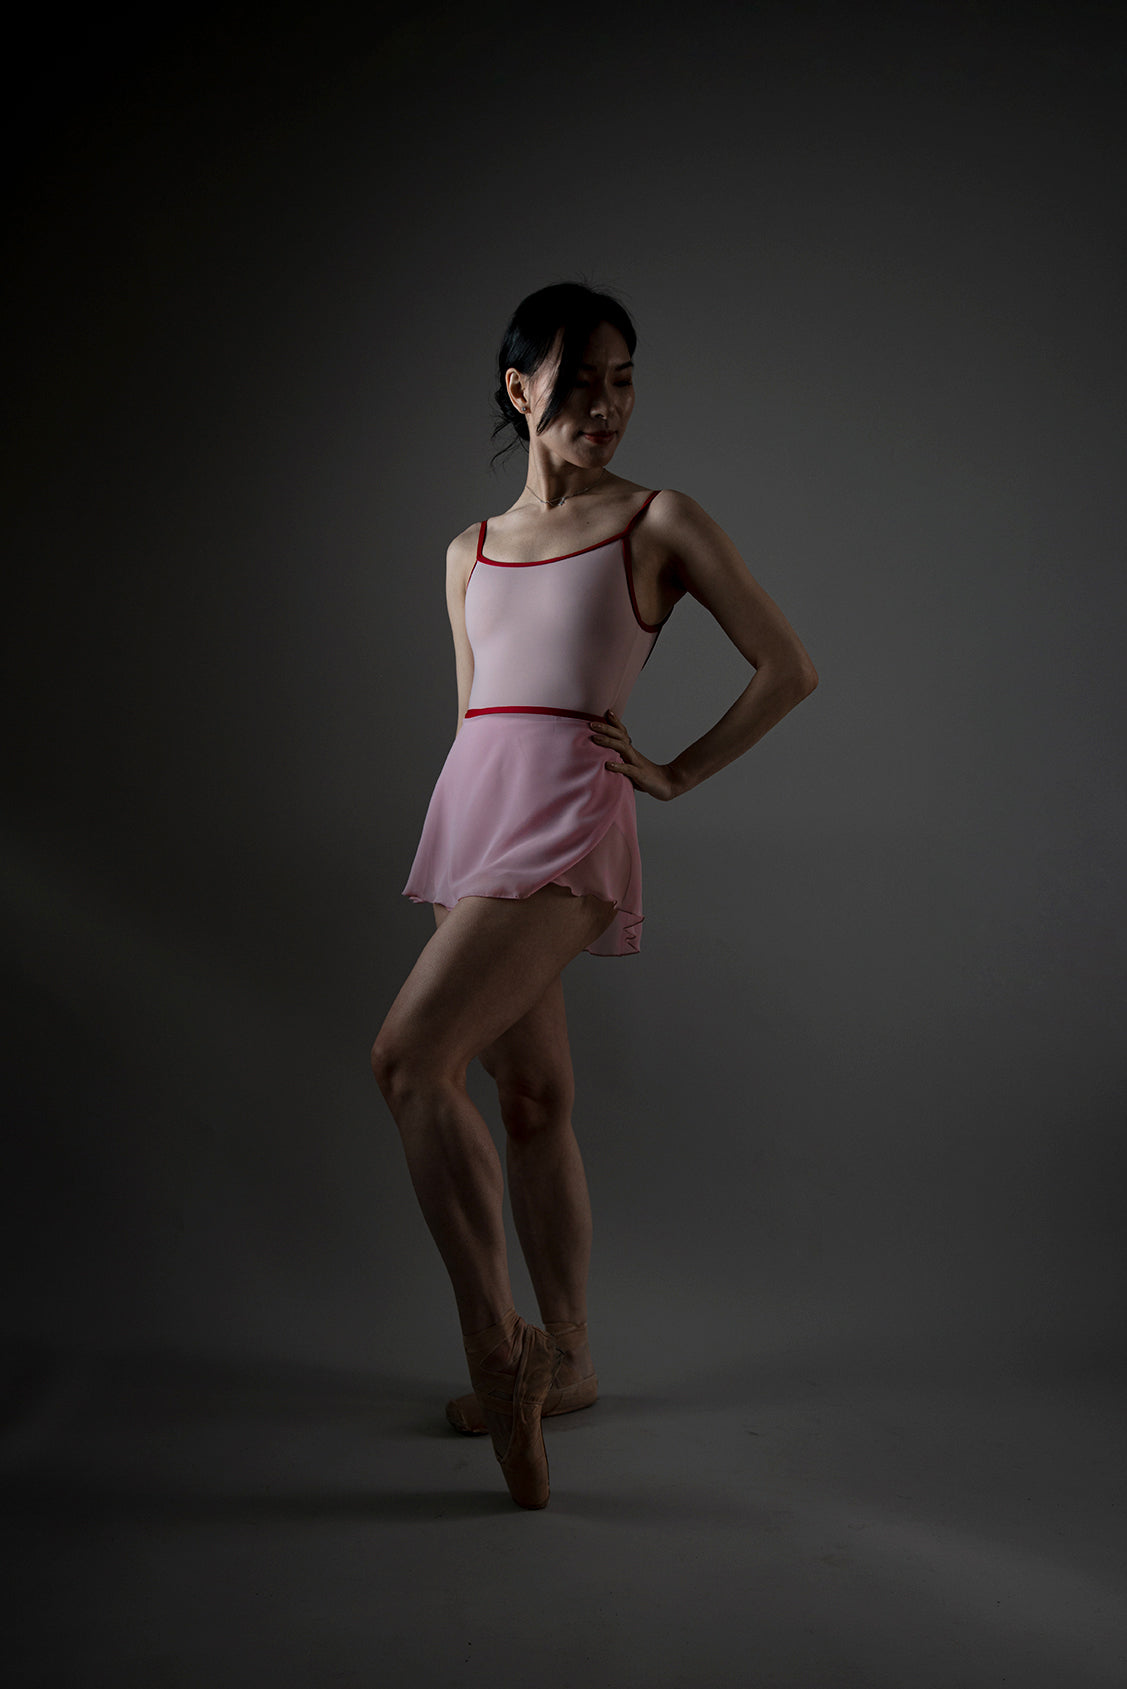 Juliette 吊带背心芭蕾紧身连衣裤 - 淡紫色粉色